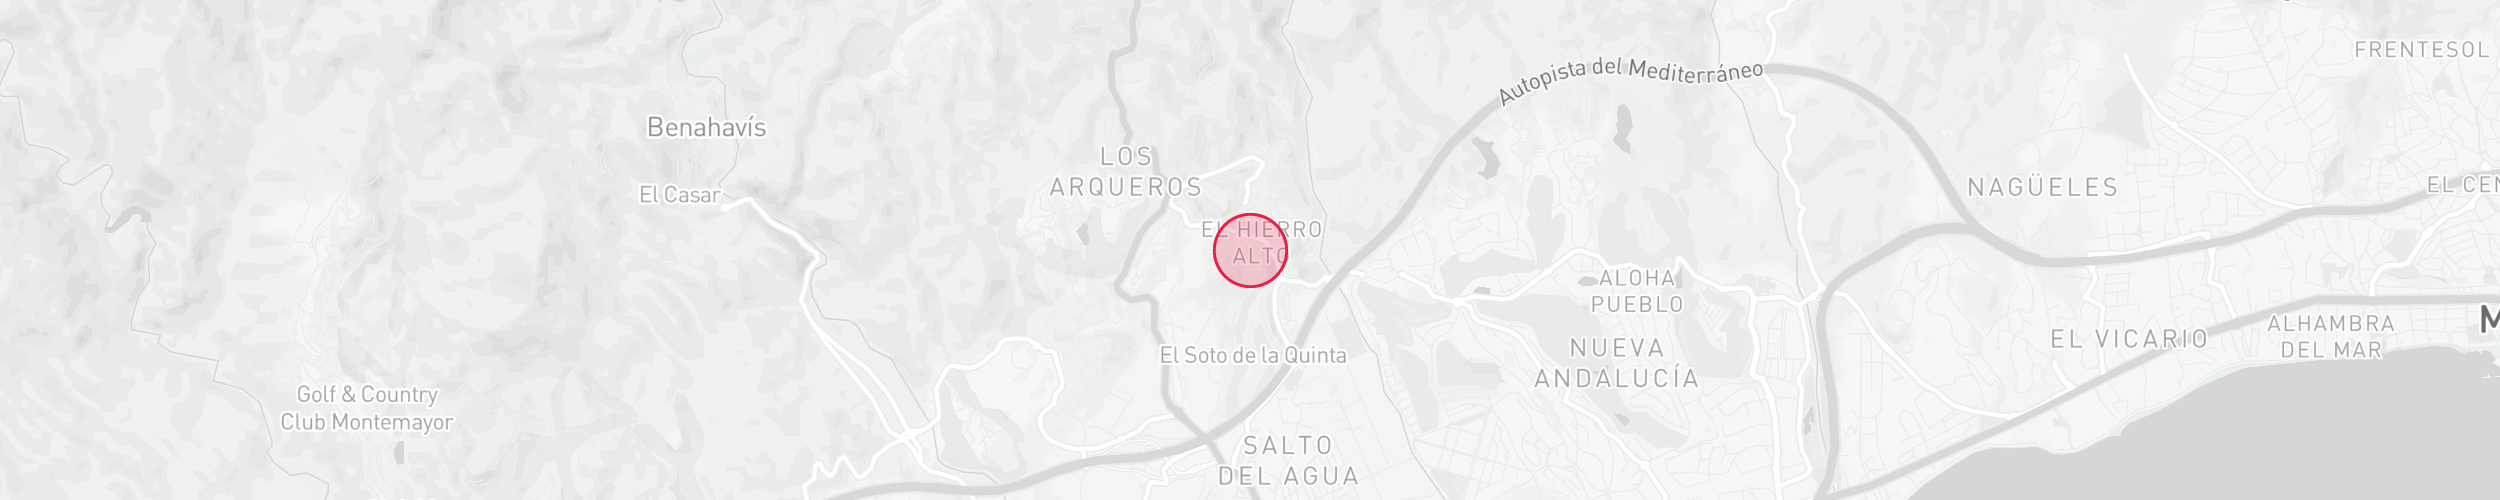 Mapa de localización de la propiedad - El Herrojo